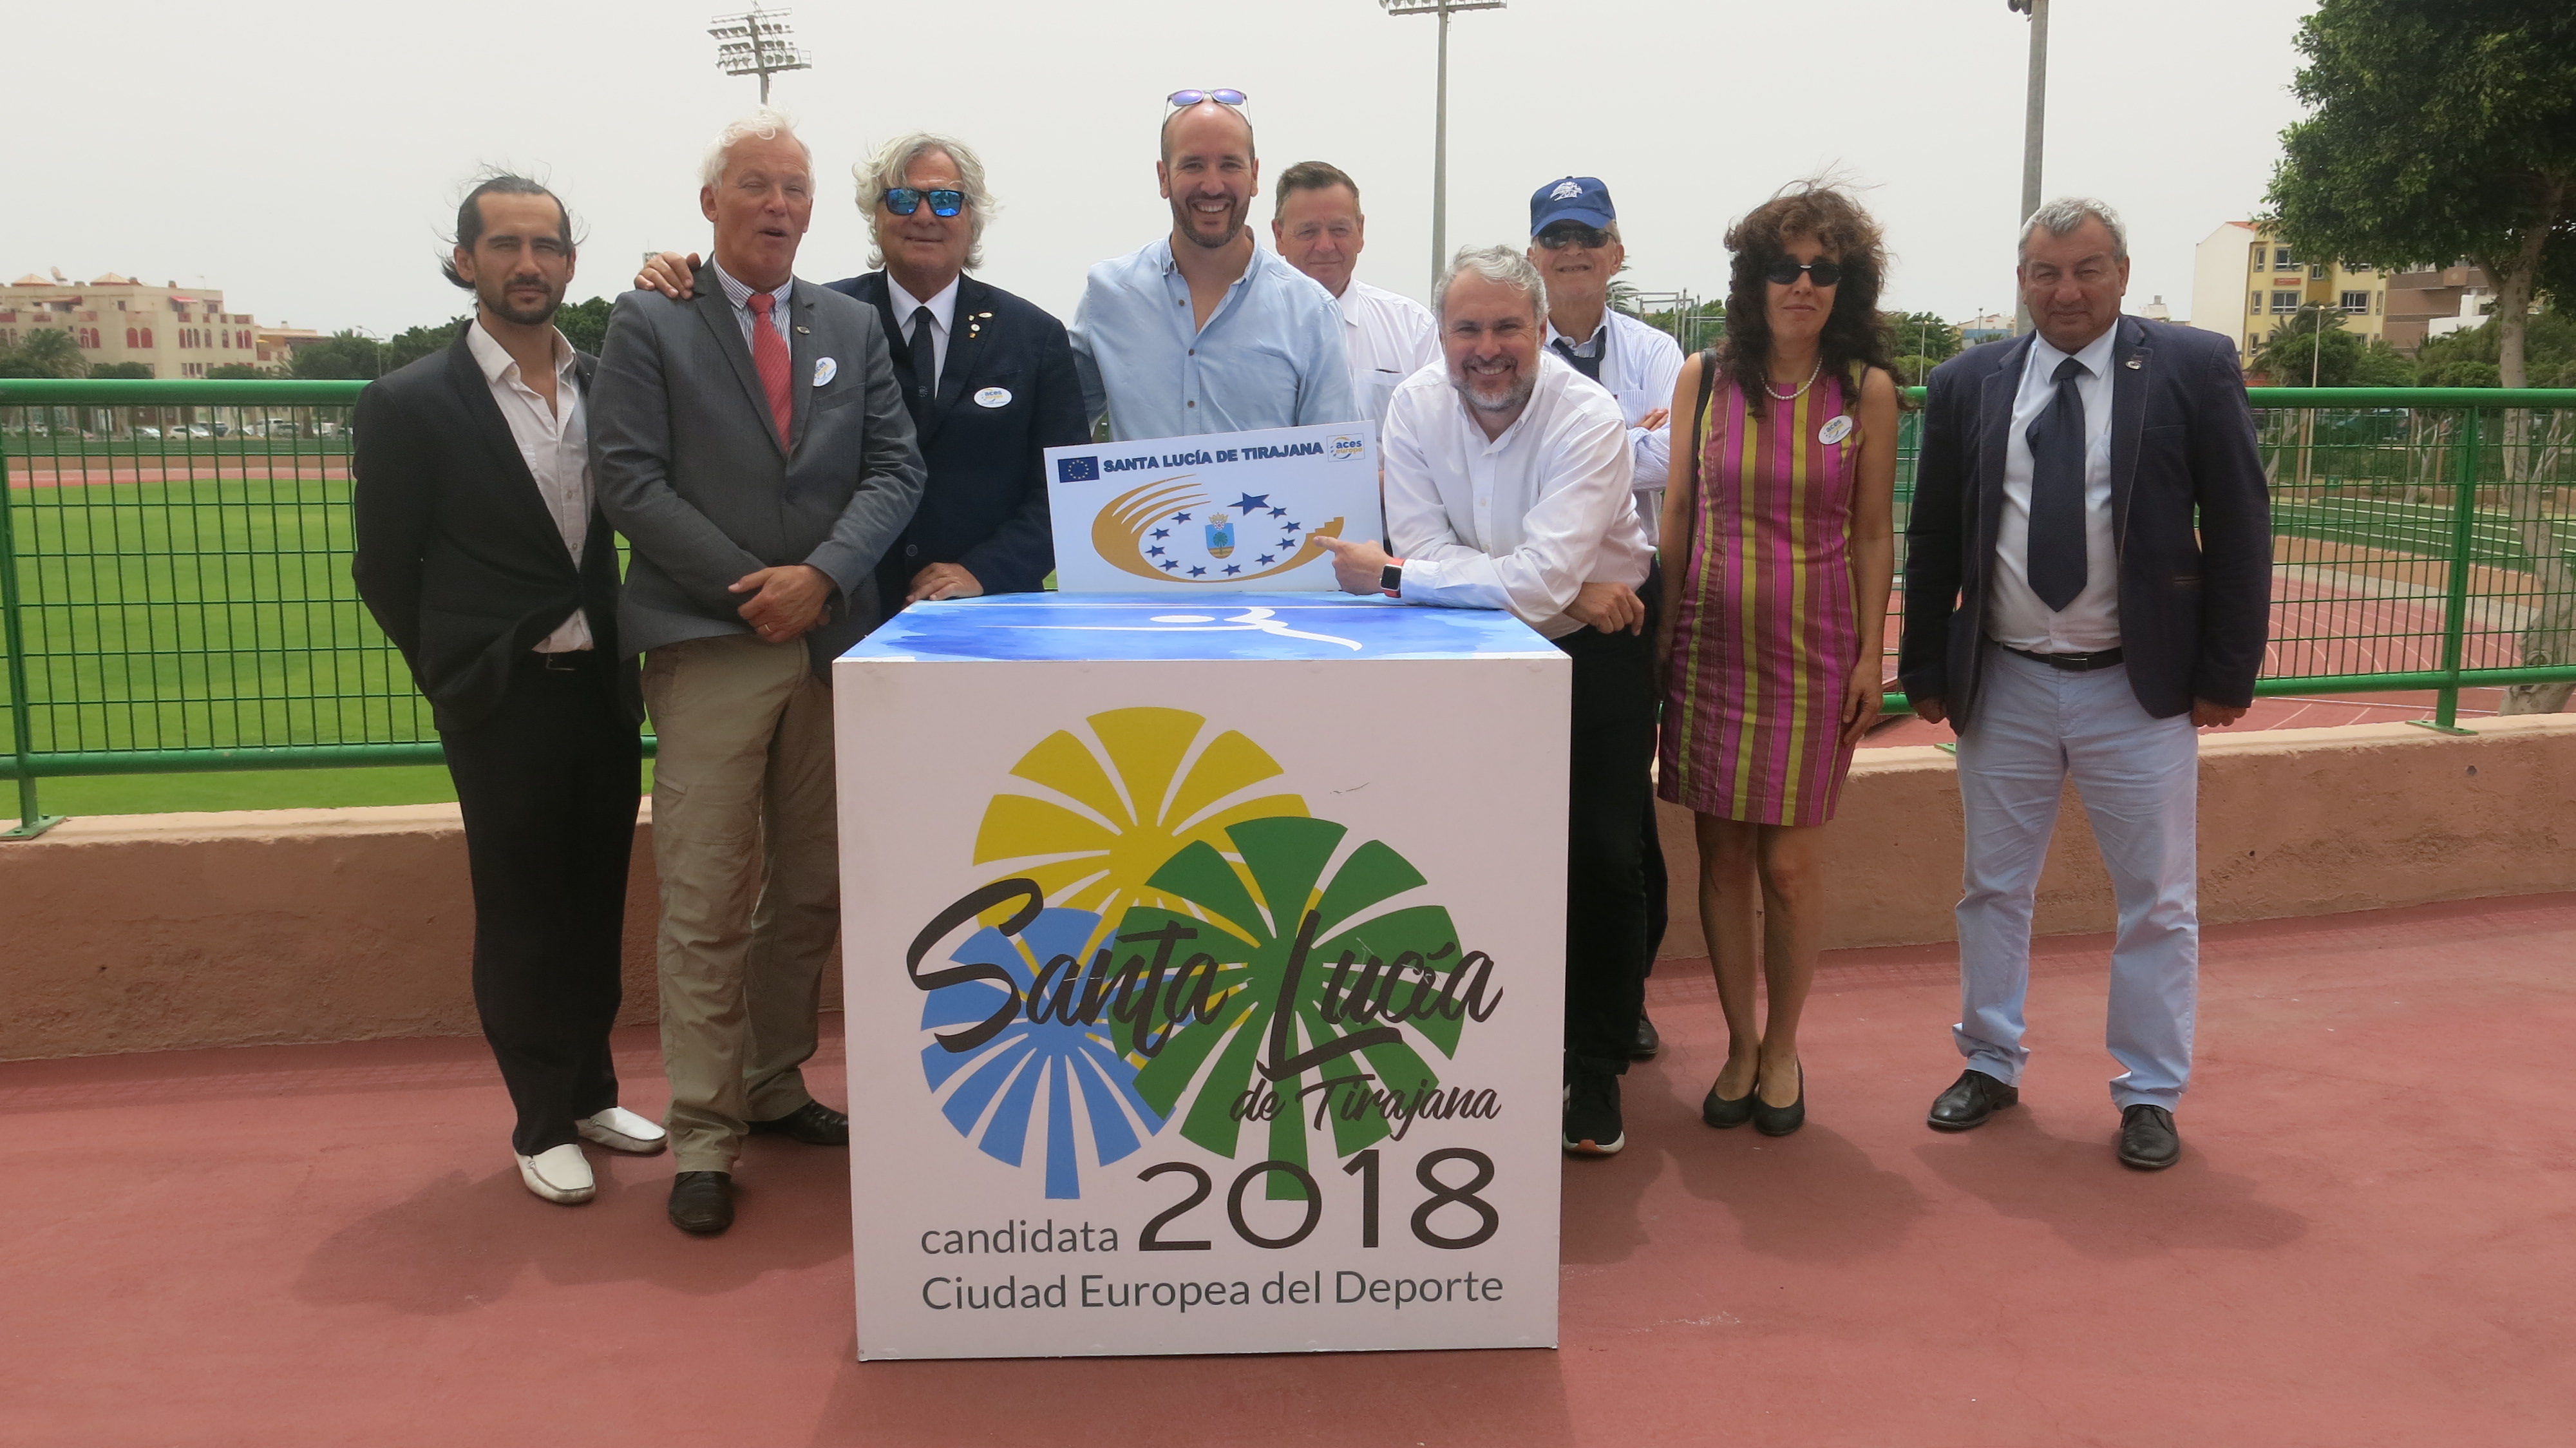 El jurado de la Federación de Ciudades Europeas del Deporte destaca la profesionalidad del proyecto presentado por Santa Lucía